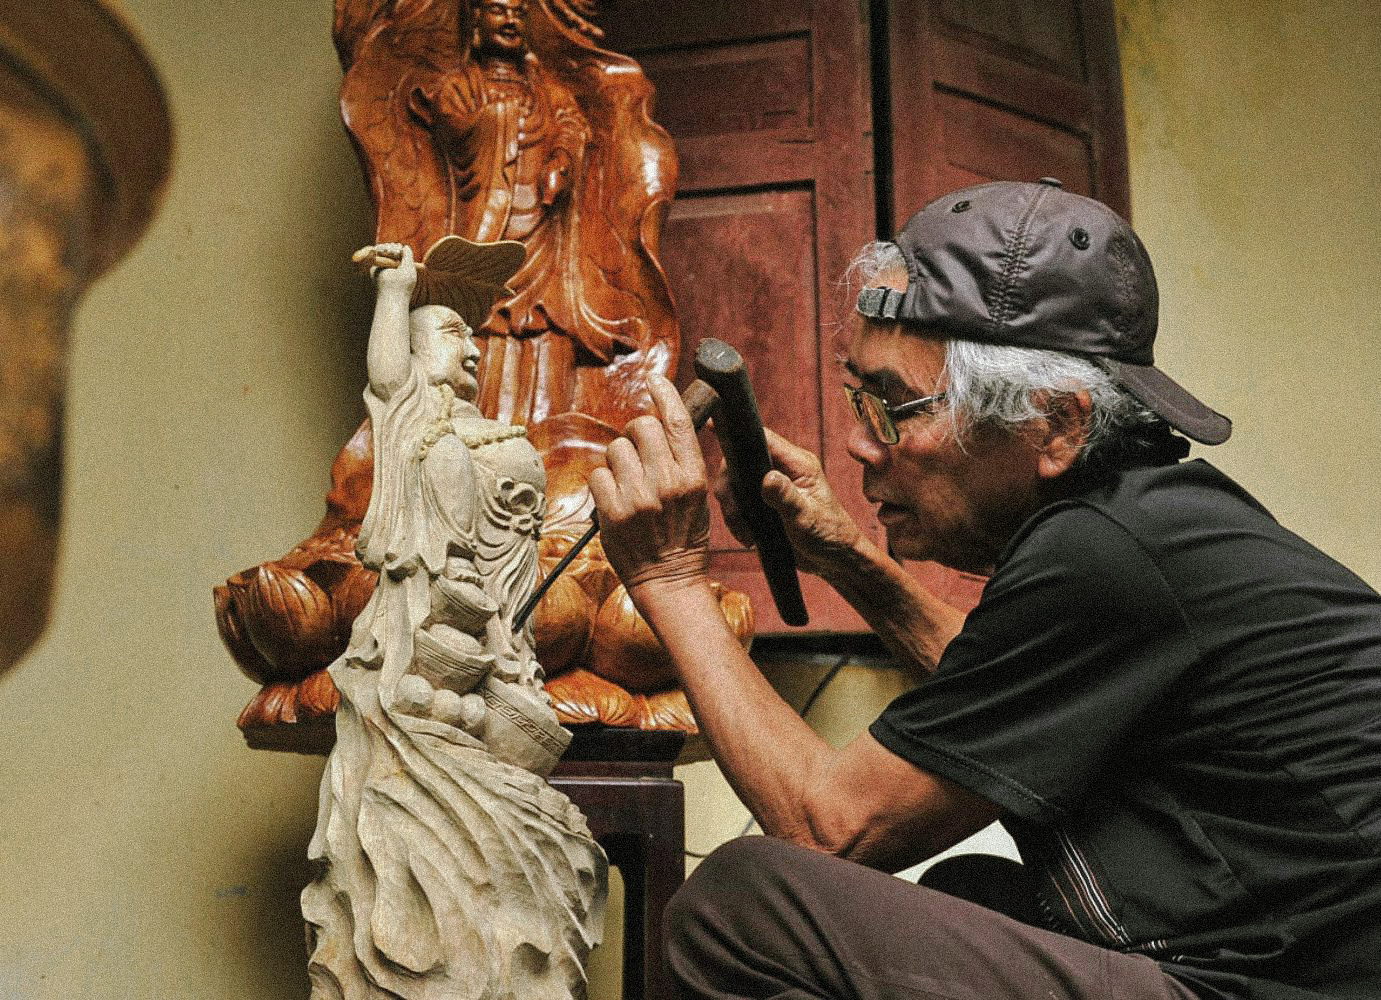 carpentry-craft-villages-in-vietnam